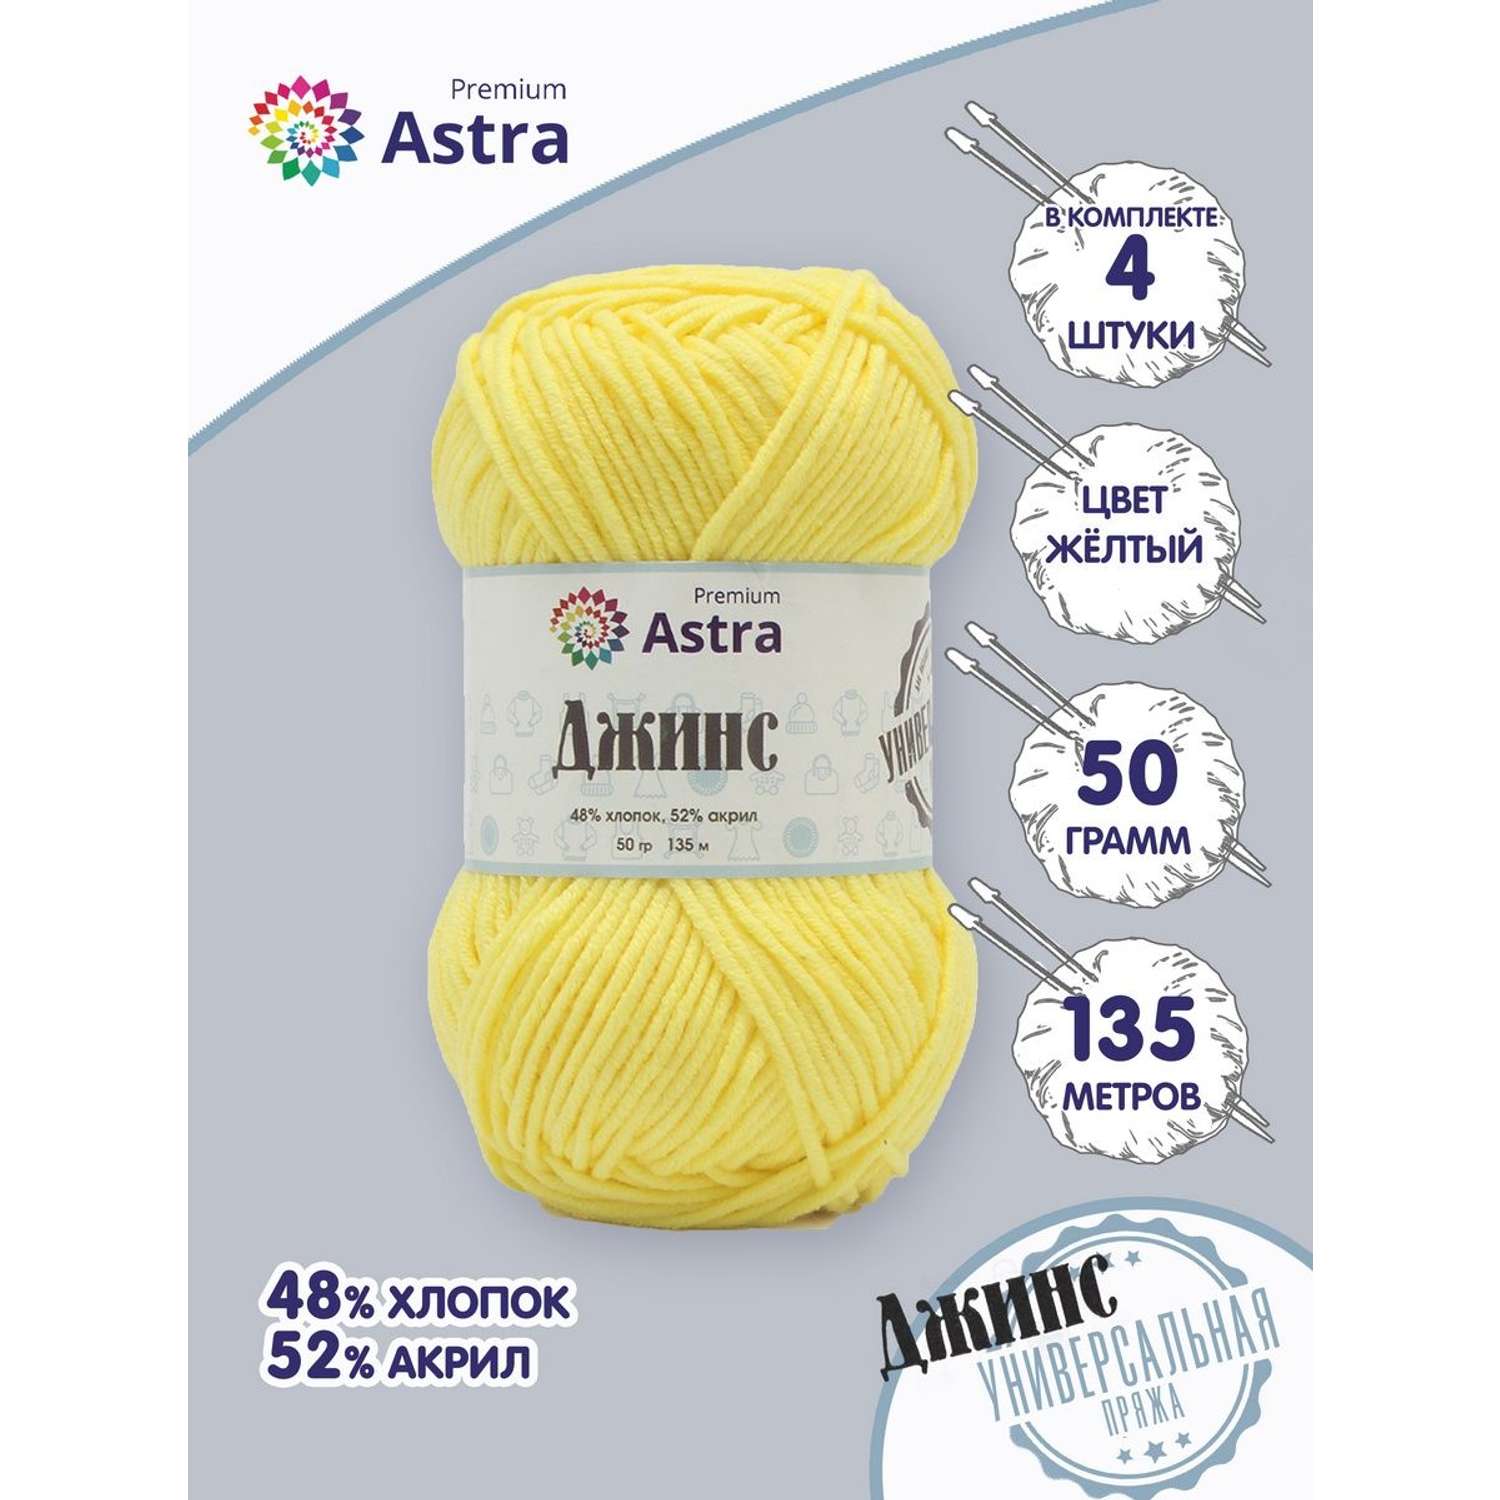 Пряжа для вязания Astra Premium джинс для повседневной одежды акрил хлопок 50 гр 135 м 310 желтый 4 мотка - фото 1